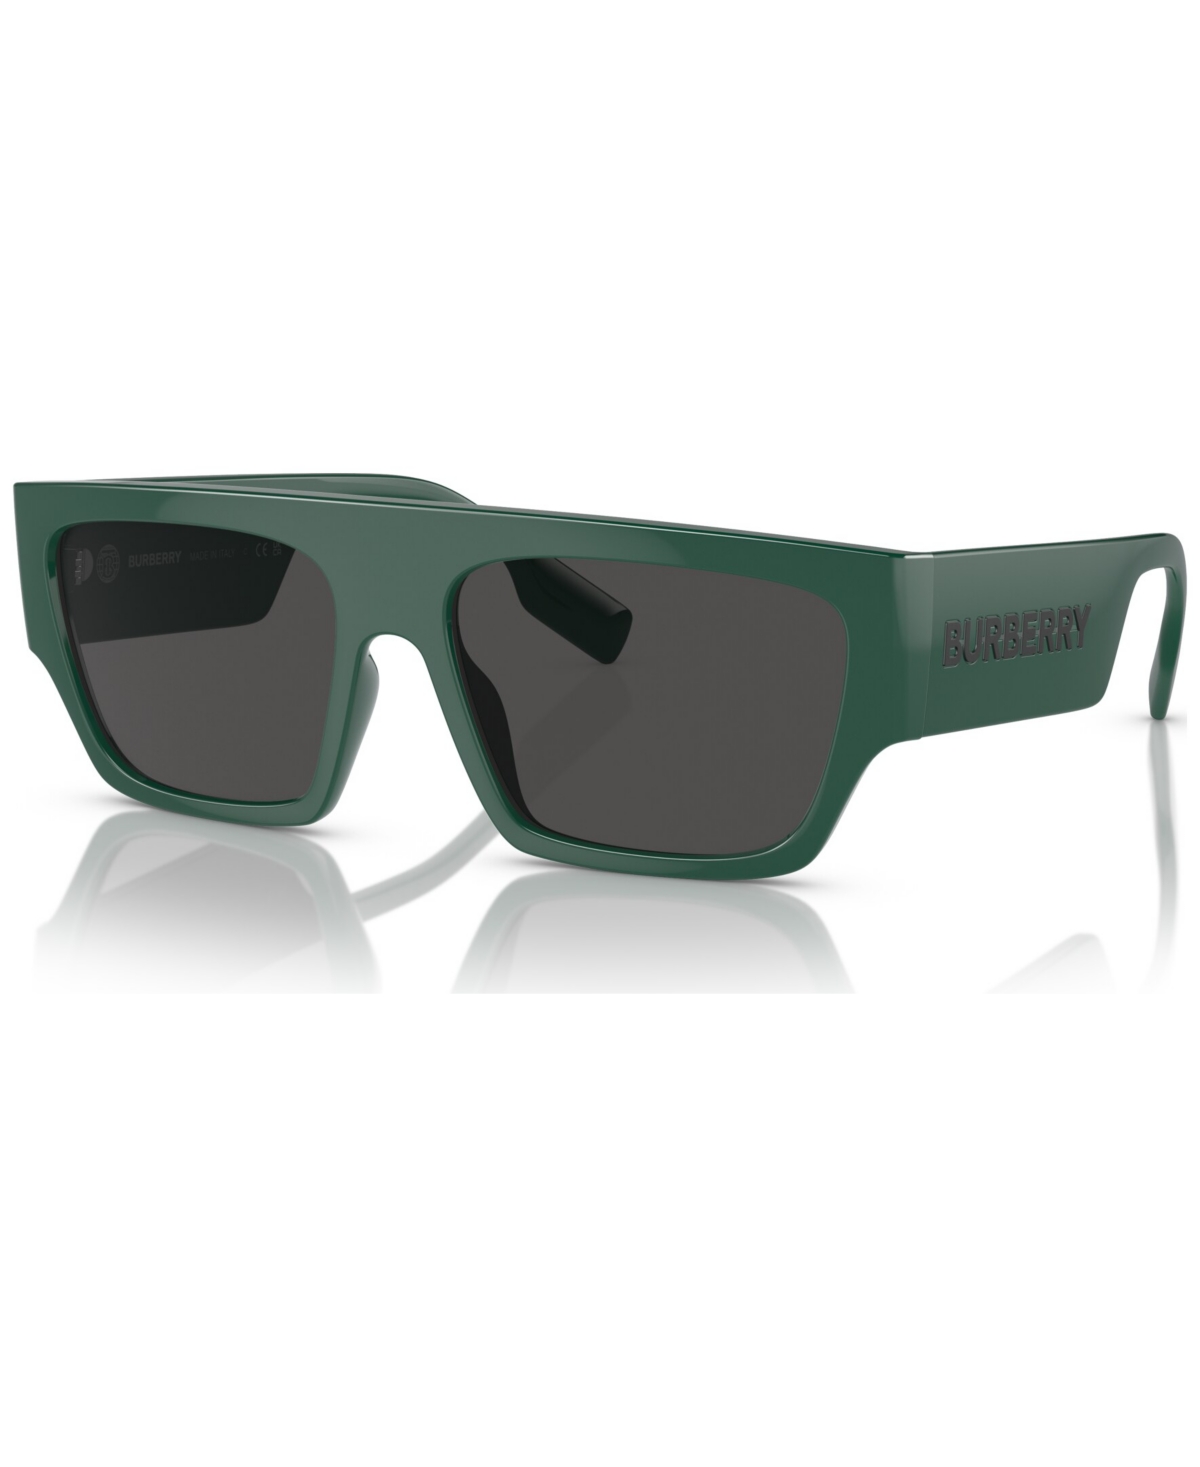 Men's Sunglasses, Micah - Green